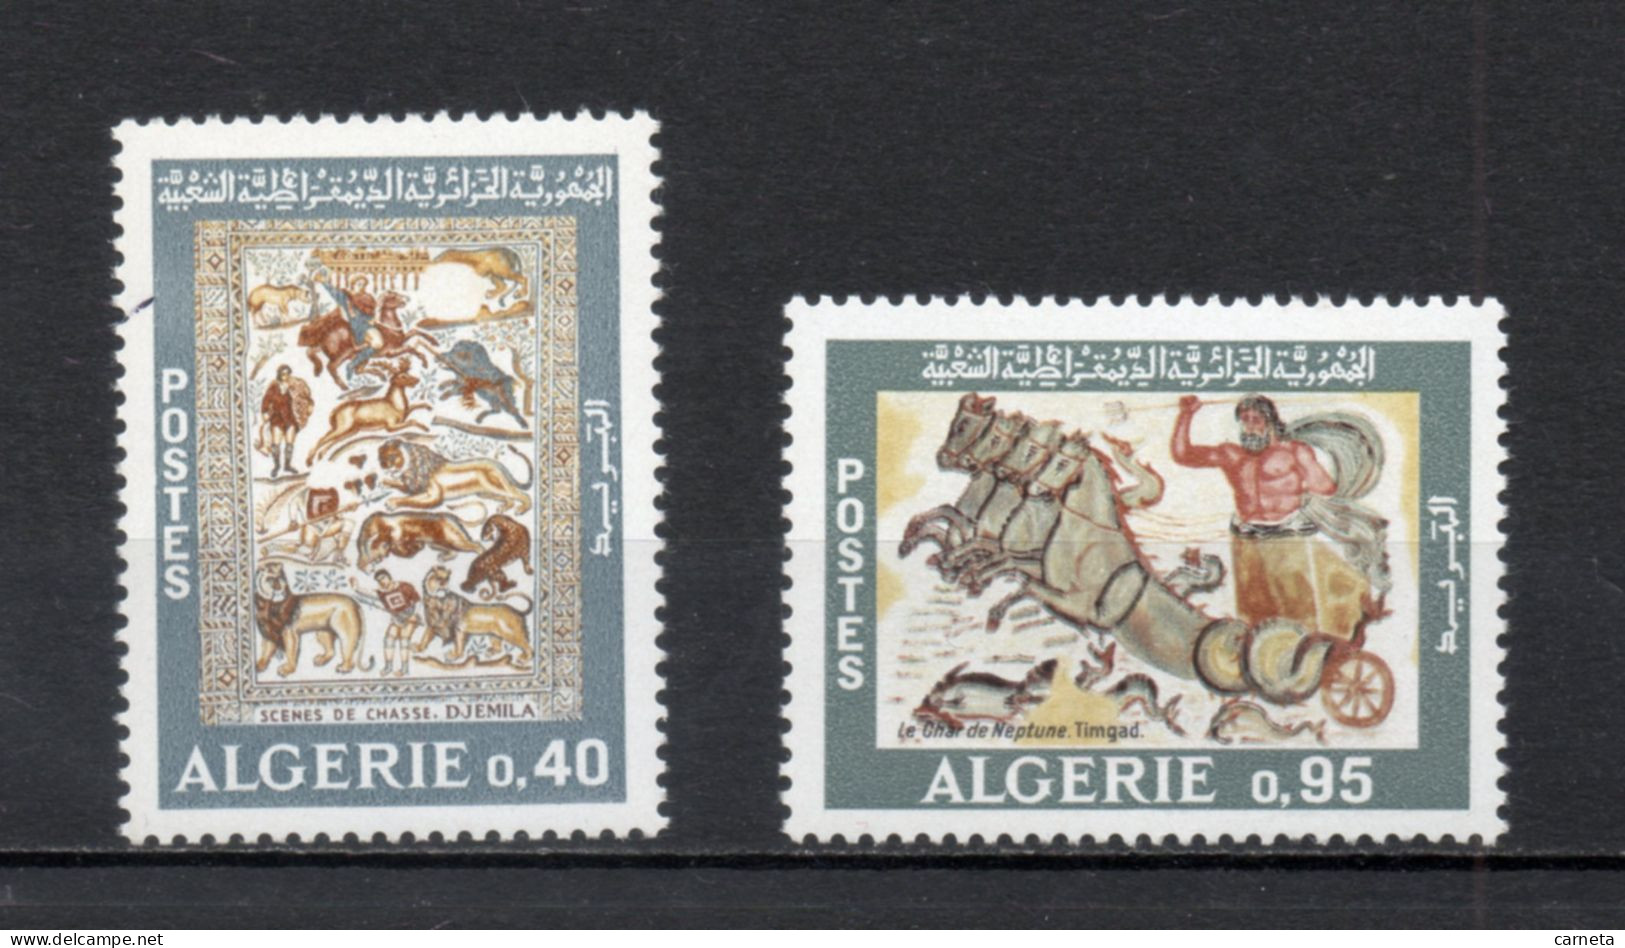 ALGERIE N° 479 + 480   NEUFS SANS CHARNIERE COTE 3.00€    MOSAIQUE ROMAINE - Algerien (1962-...)